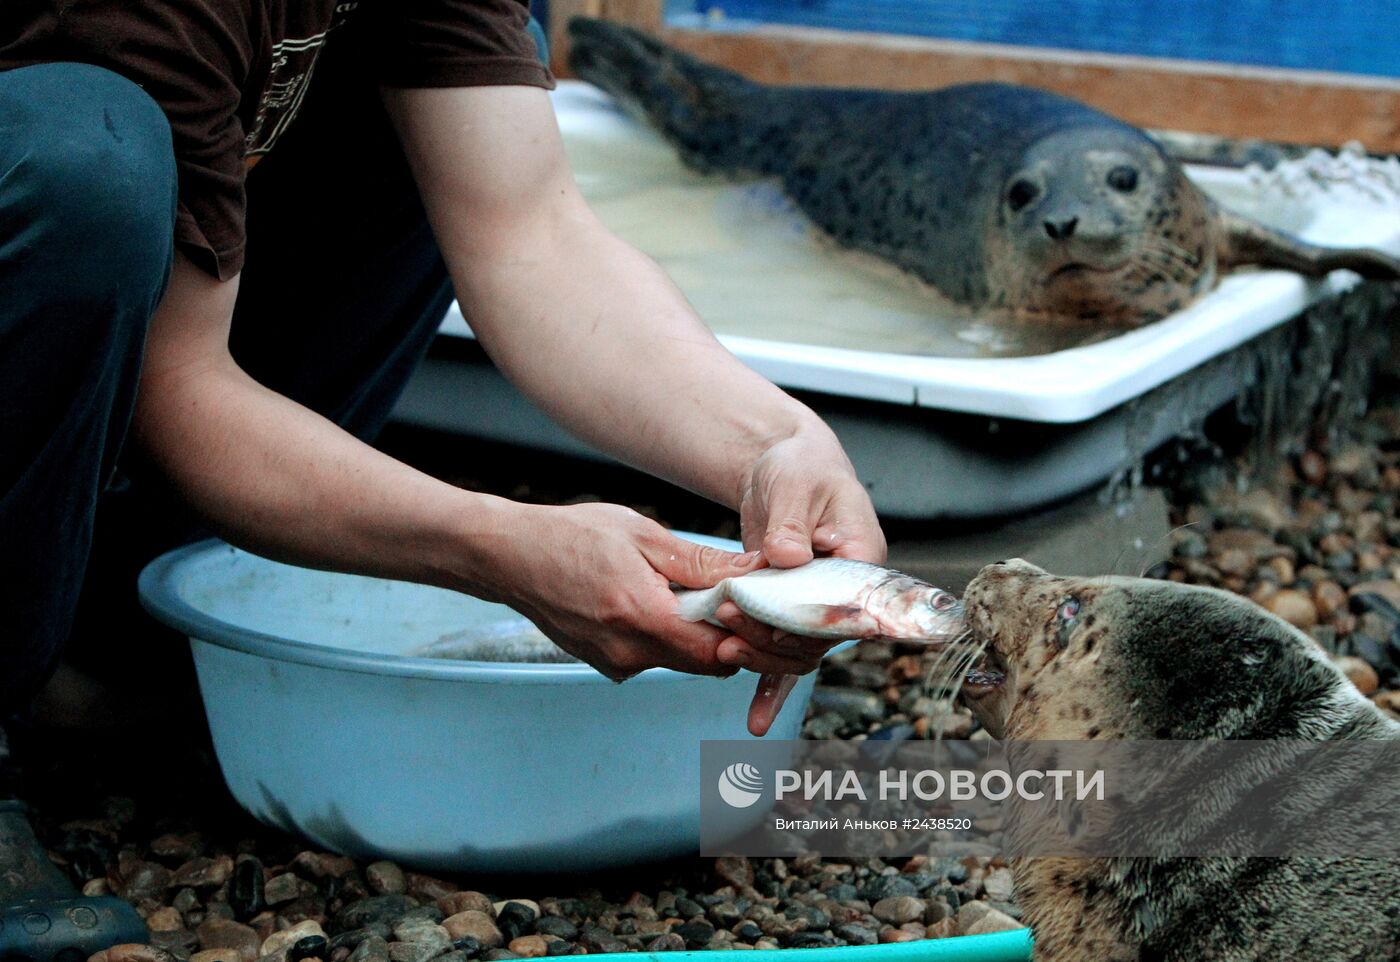 Реабилитационный центр "Тюлень" в Приморском крае